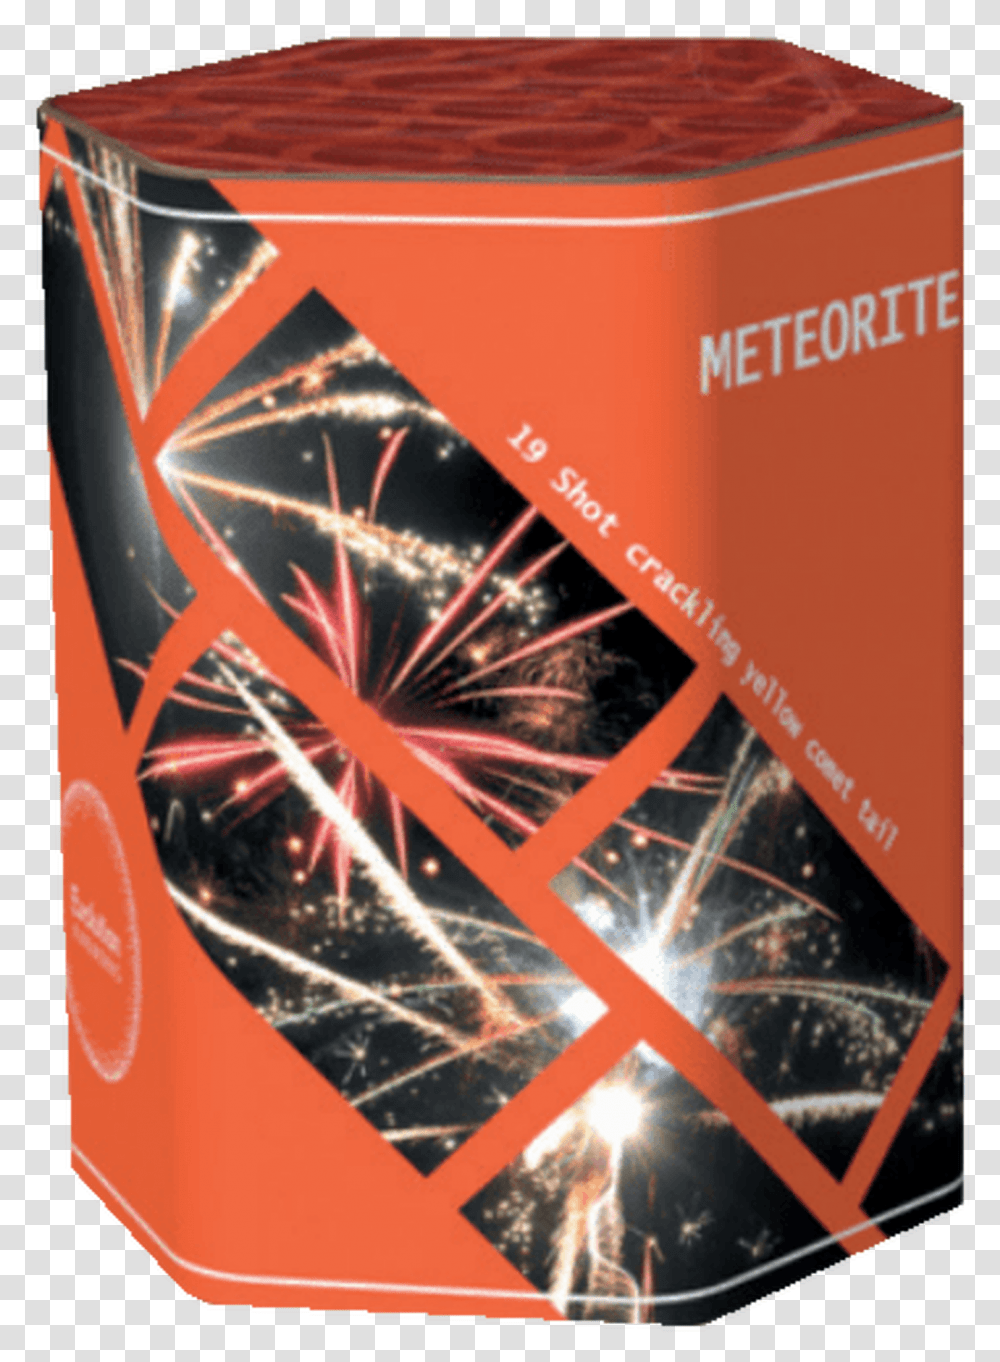 Meteorite, Beverage, Drink, Bottle, Poster Transparent Png